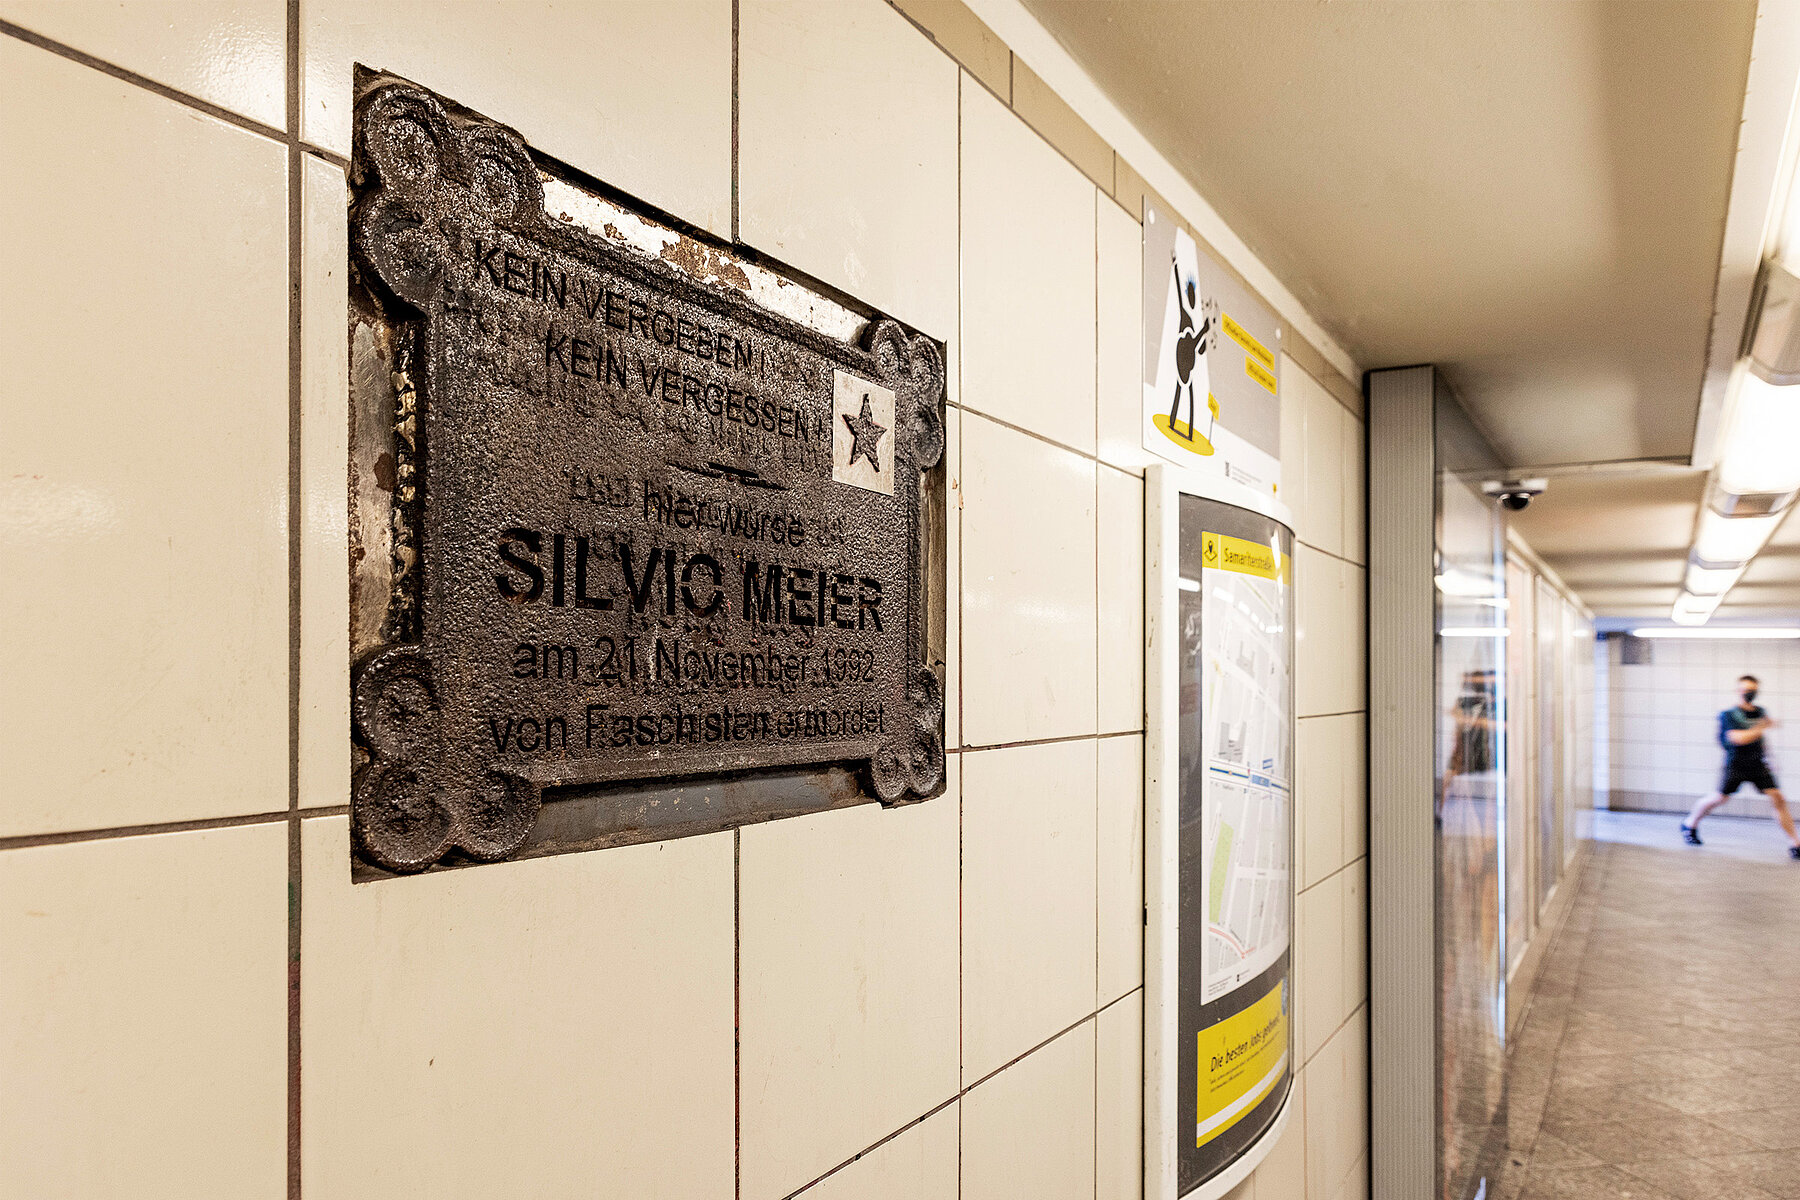 Gedenktafel für Silvio Meier auf der Zwischenebene des U-Bahnhofs. Auf ihr steht: Kein Vergeben, kein Vergessen. Hier wurde Silvio Meier am 21. November 1992 von Faschisten ermordet.